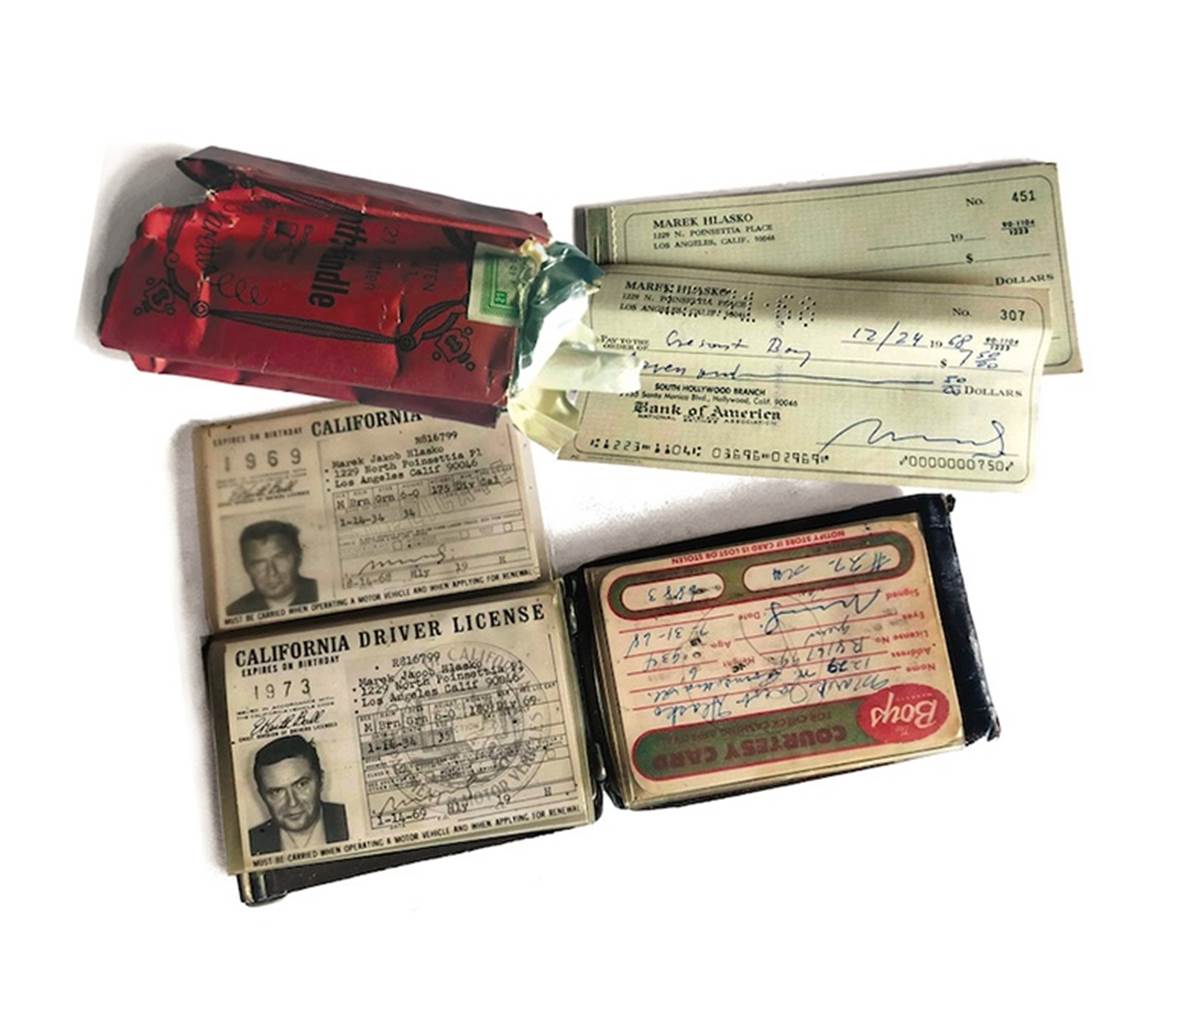 Czeki, plakietka aeroklubu w Santa Monica, portfel oraz ostatnia paczka papierosów, pochodzą z prywatnego archiwum Agnieszki Czyżewskiej – spadkobierczyni Marka Hłaski